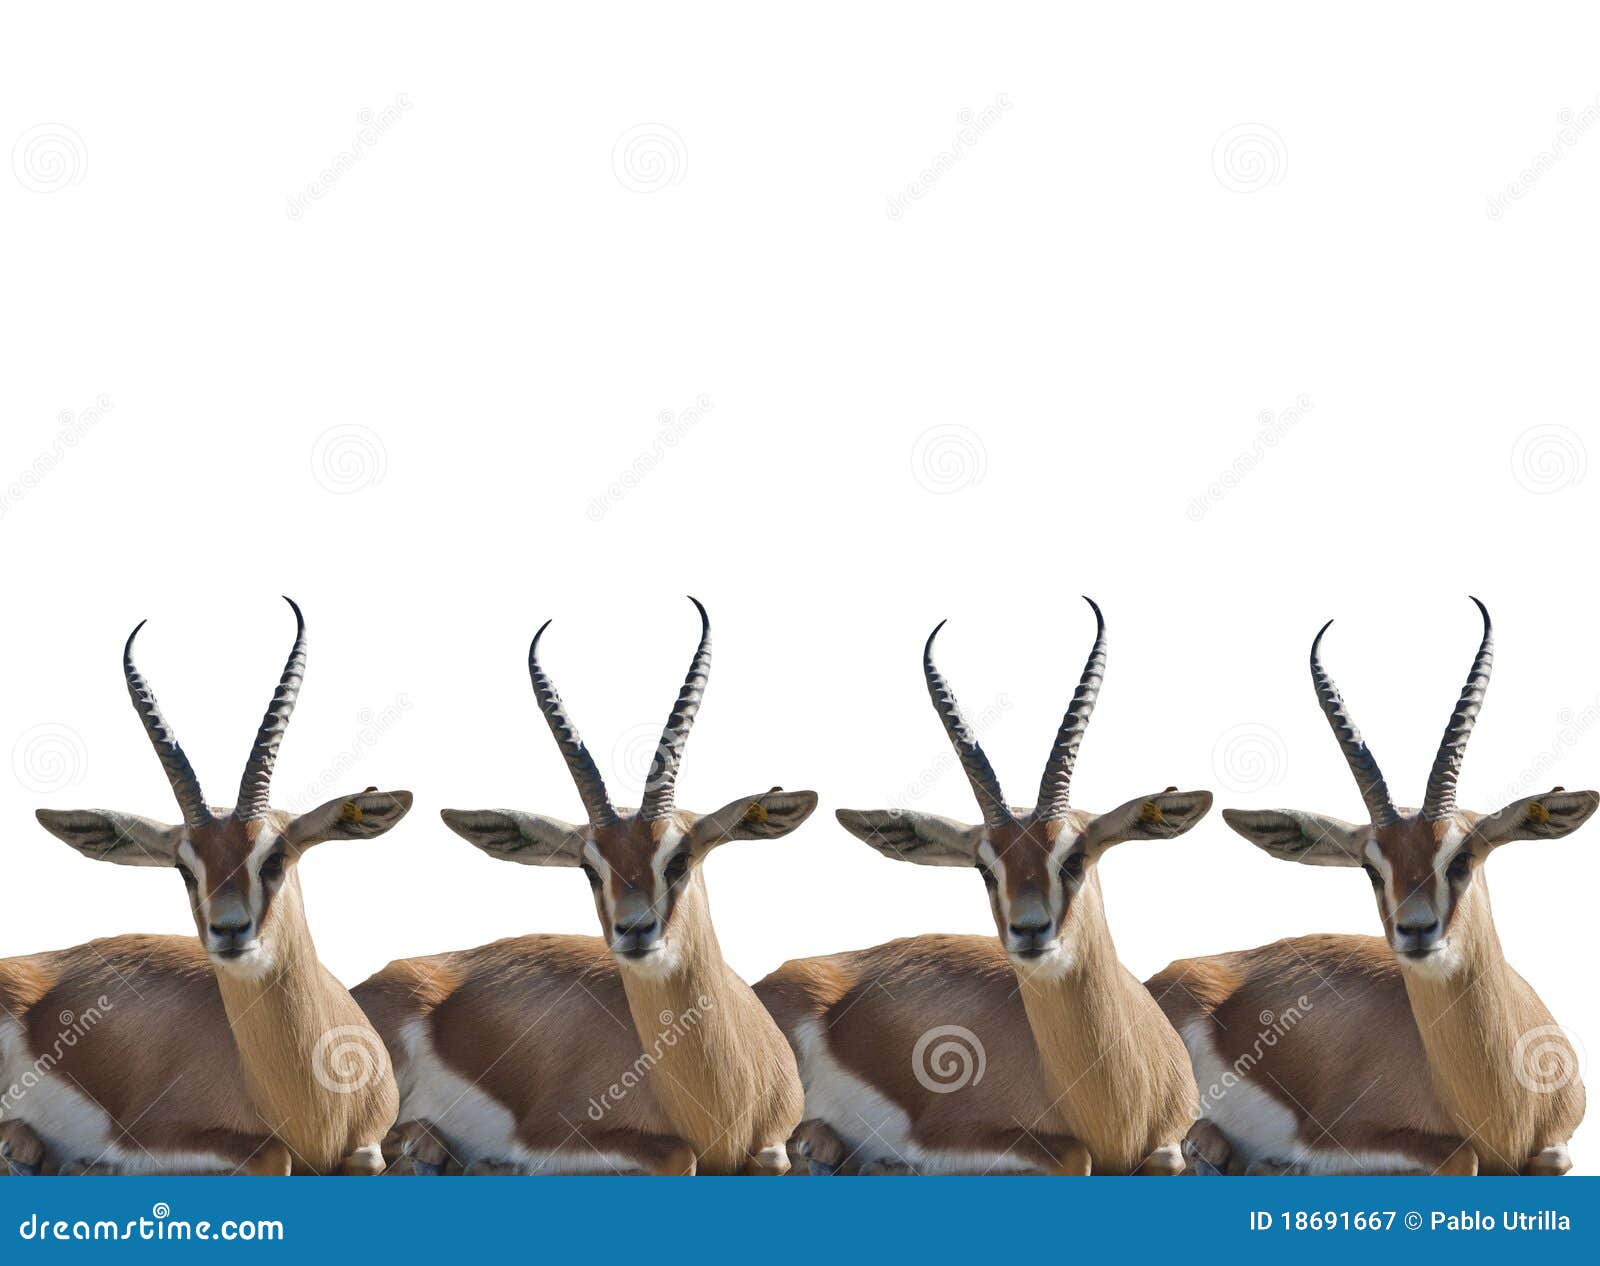 thompson gazelles